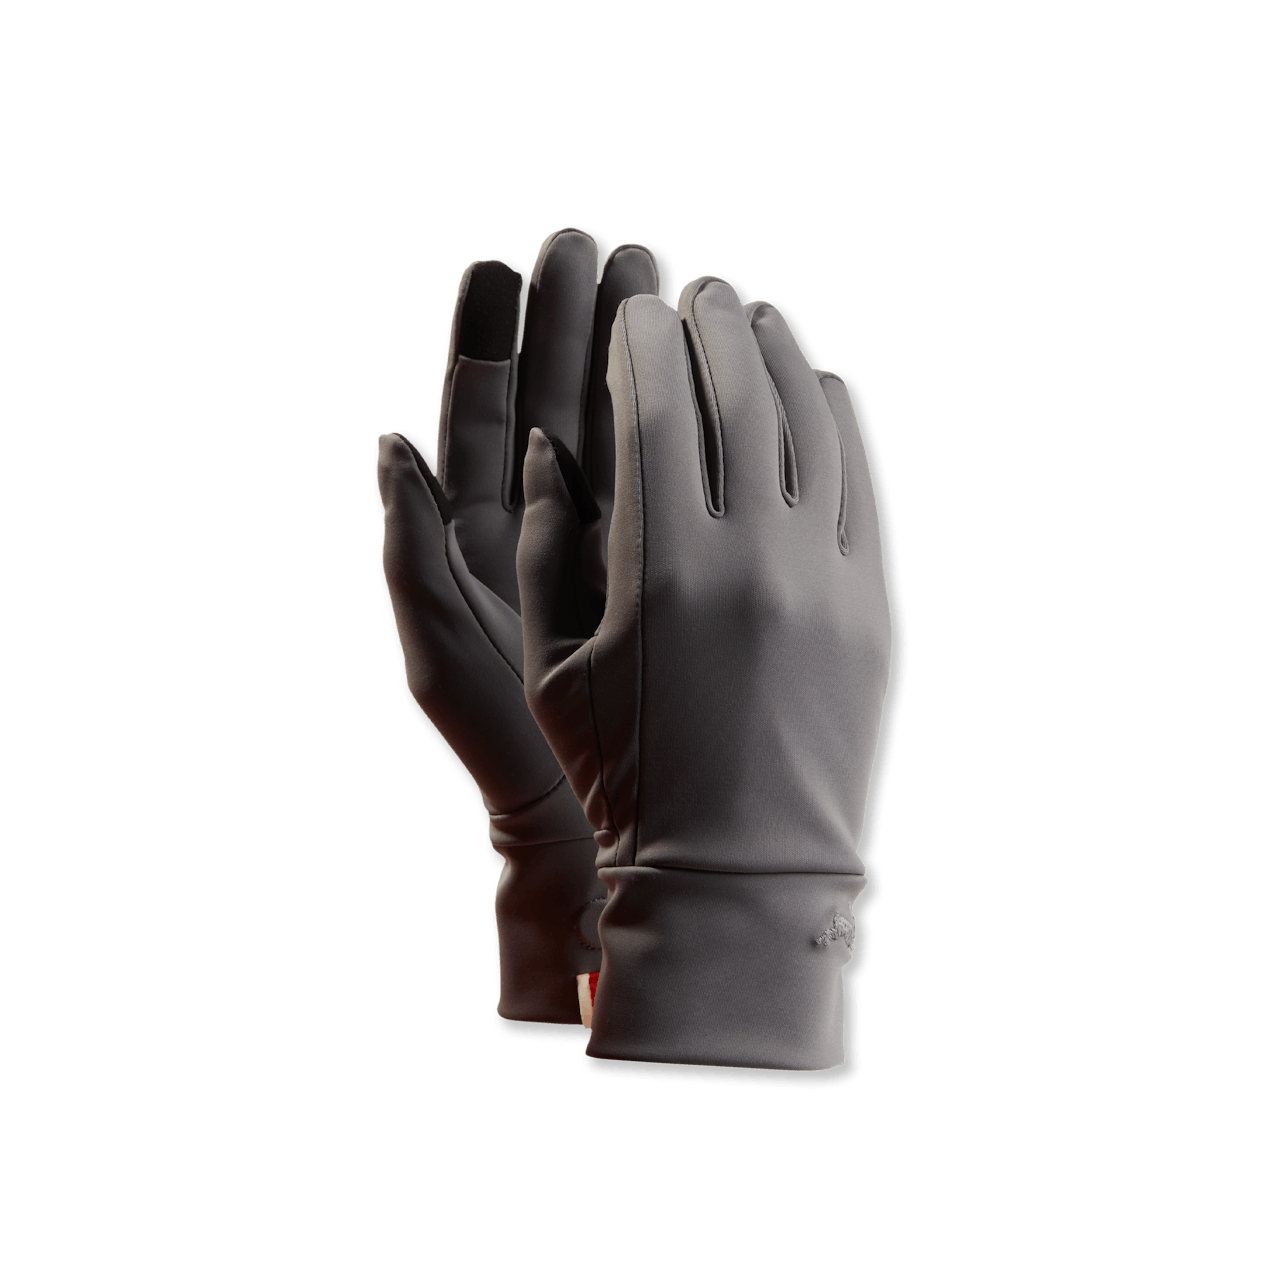 NDO Gloves